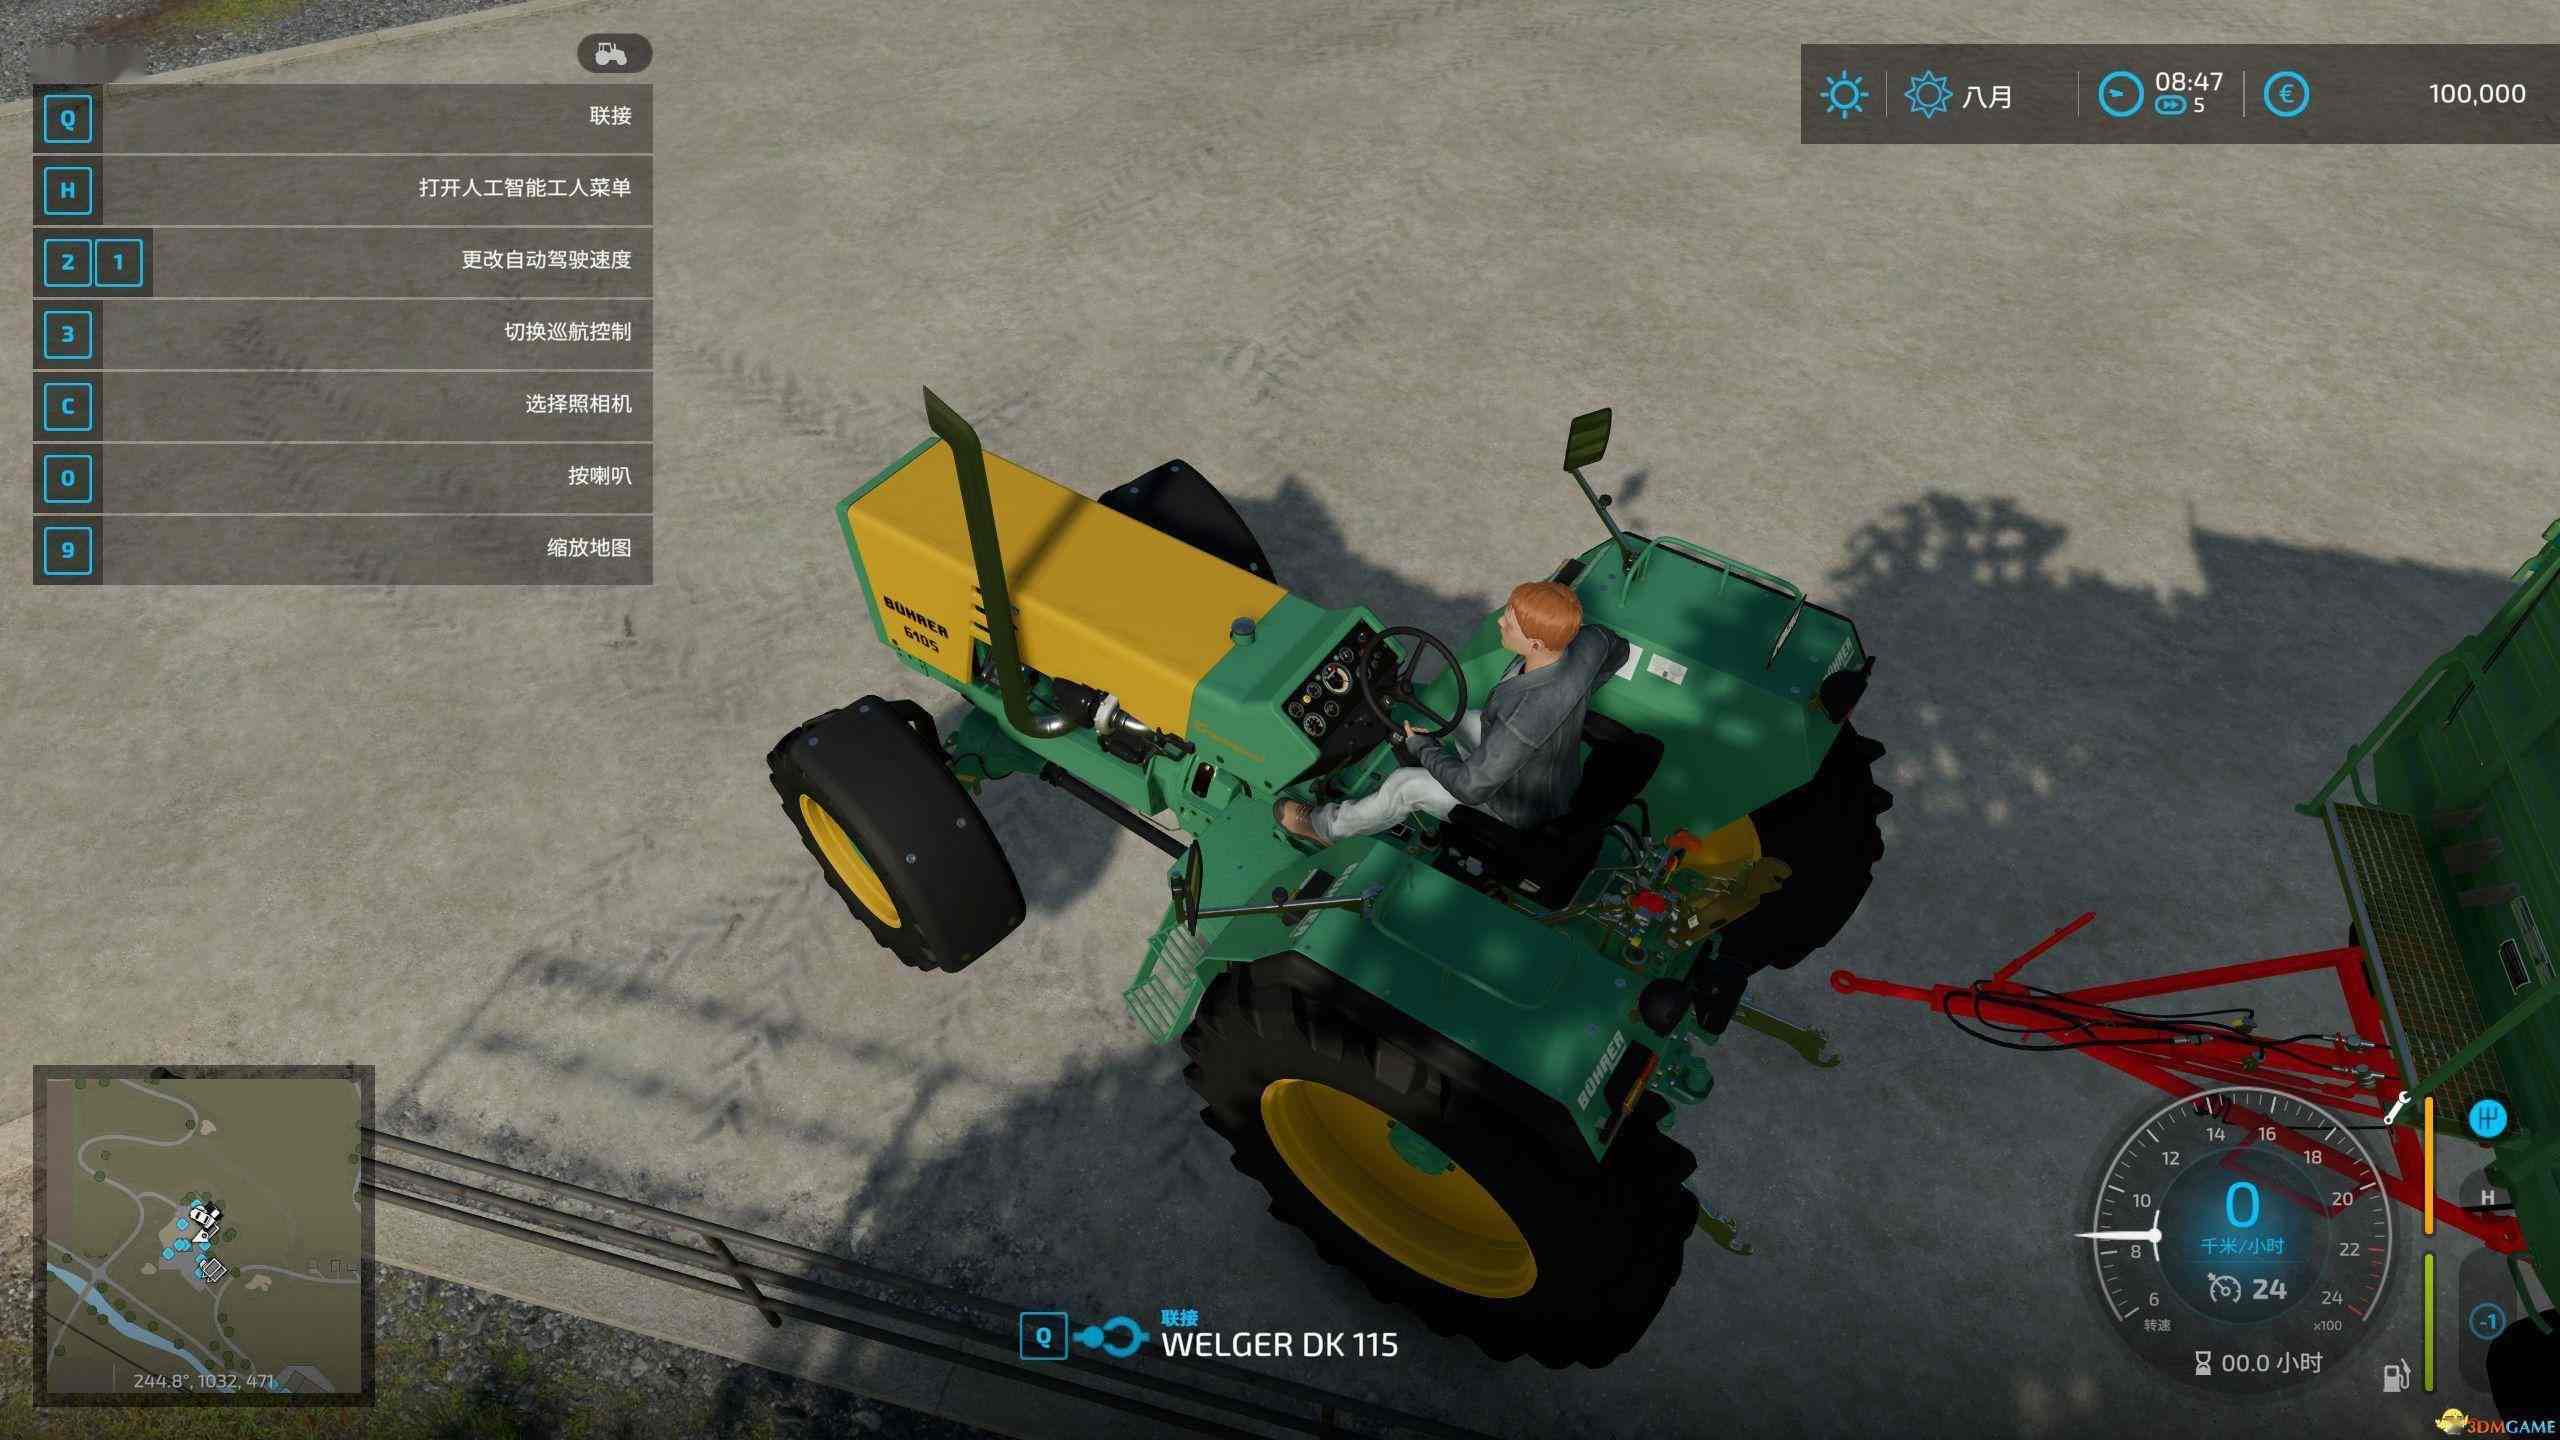 《模拟农场22》图文攻略 农场经营指南及系统玩法详解